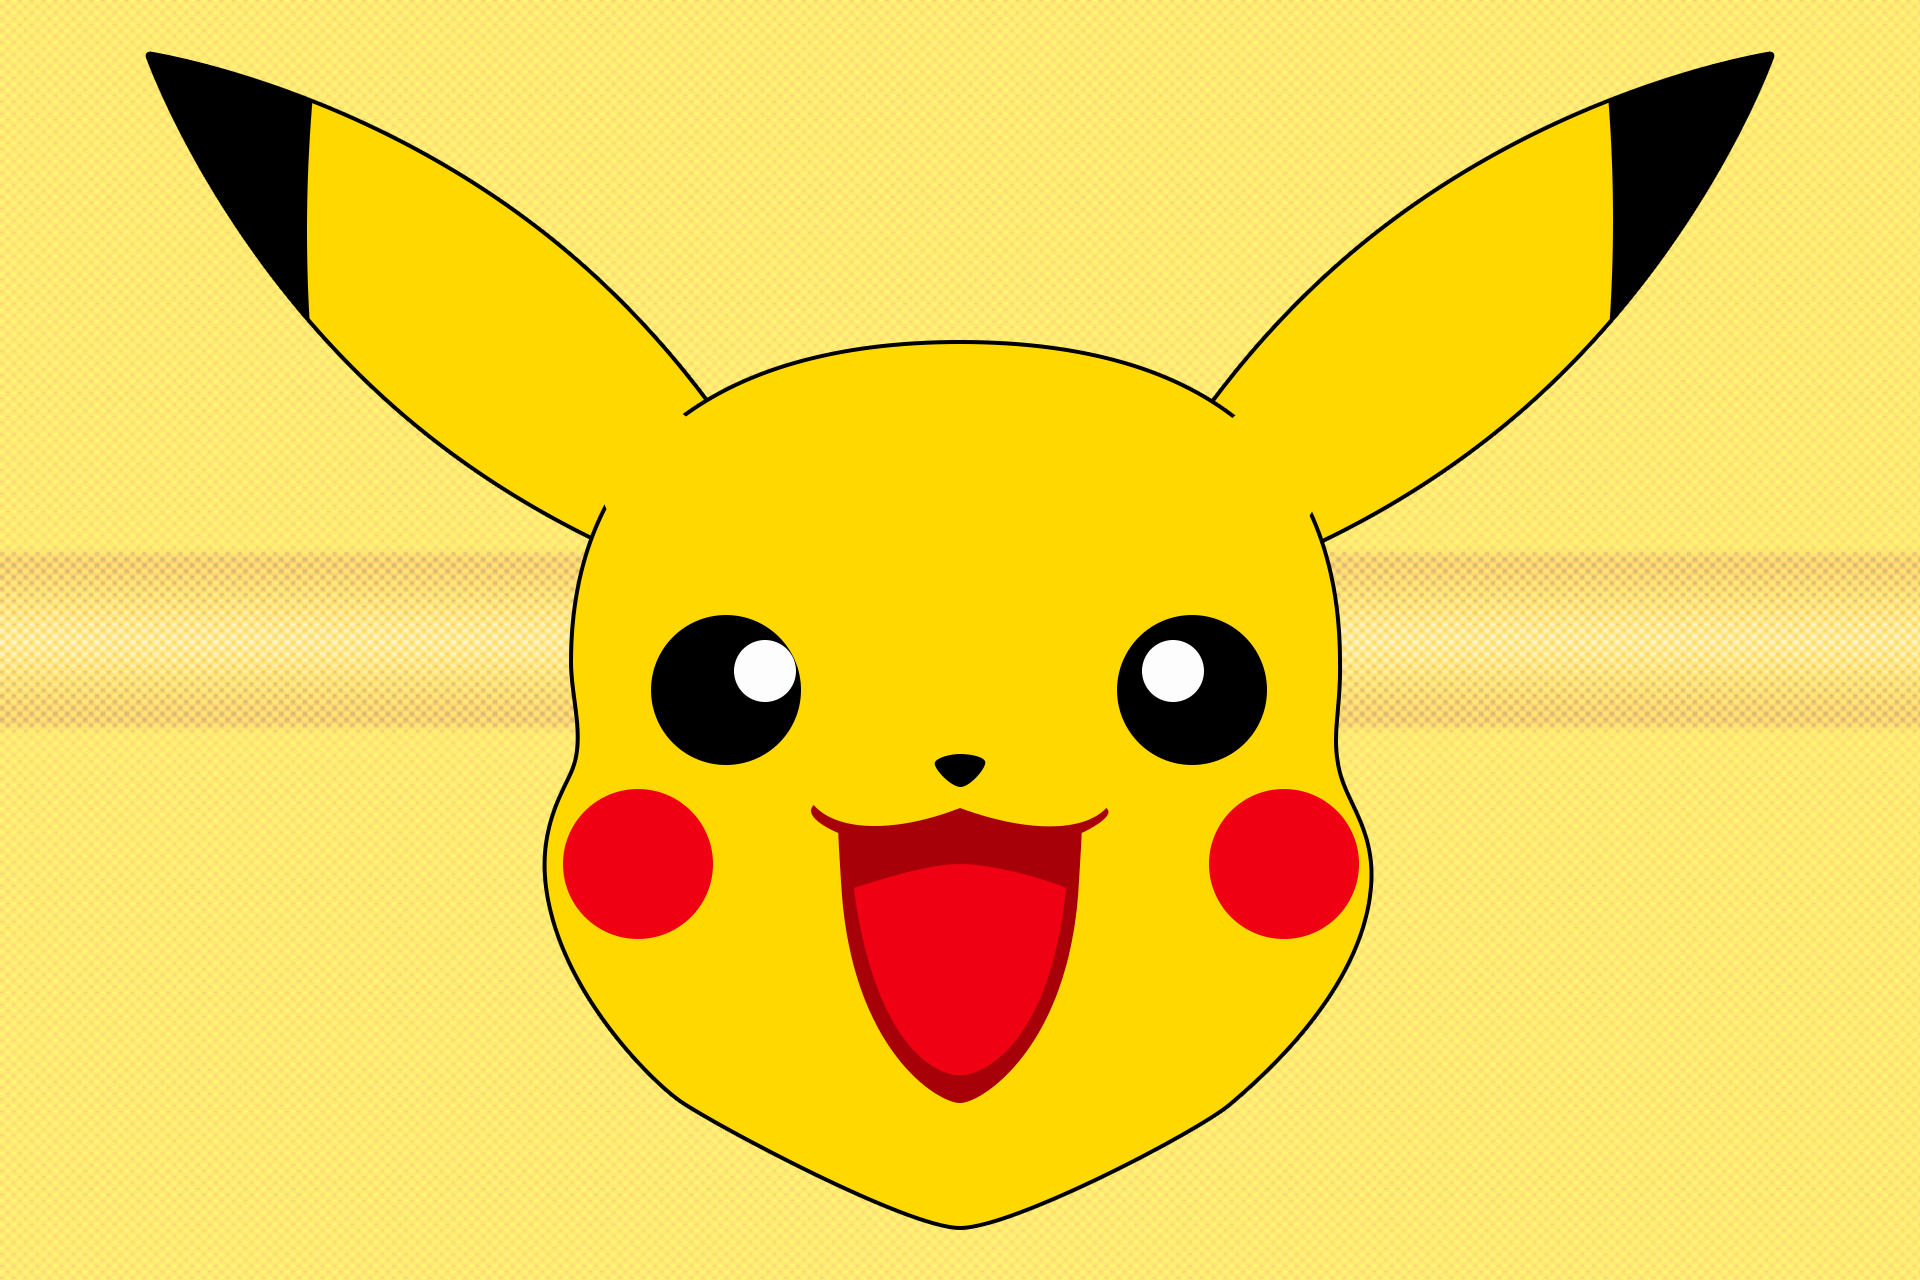 Pikachu Face PNG Transparent Pikachu Face.PNG Images. PlusPNG